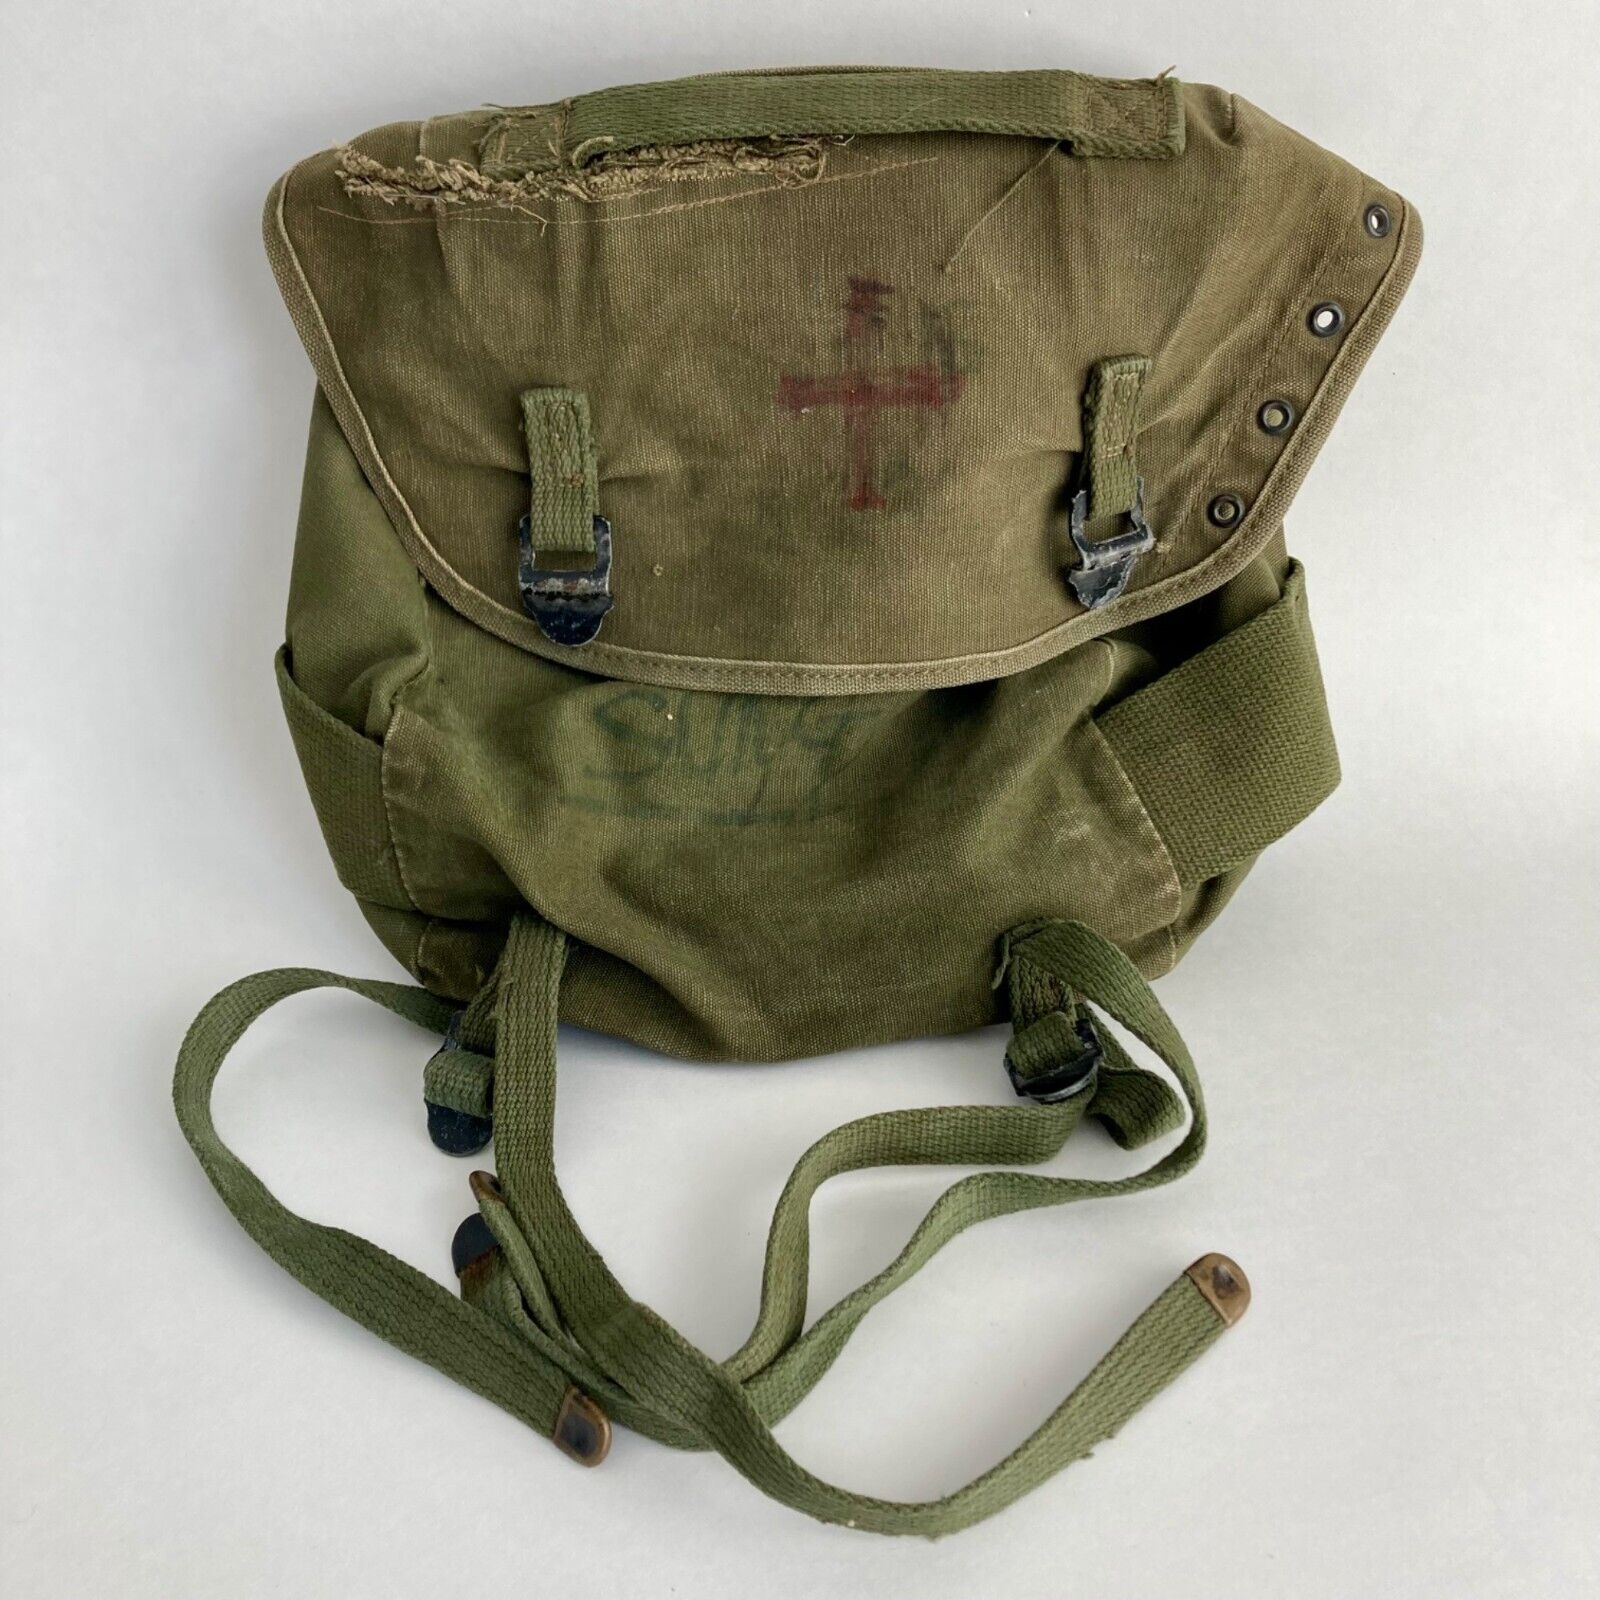 Vintage US Army Canvas Field Pack Vietnam? Era Butt Waist Pack Bag OD Green